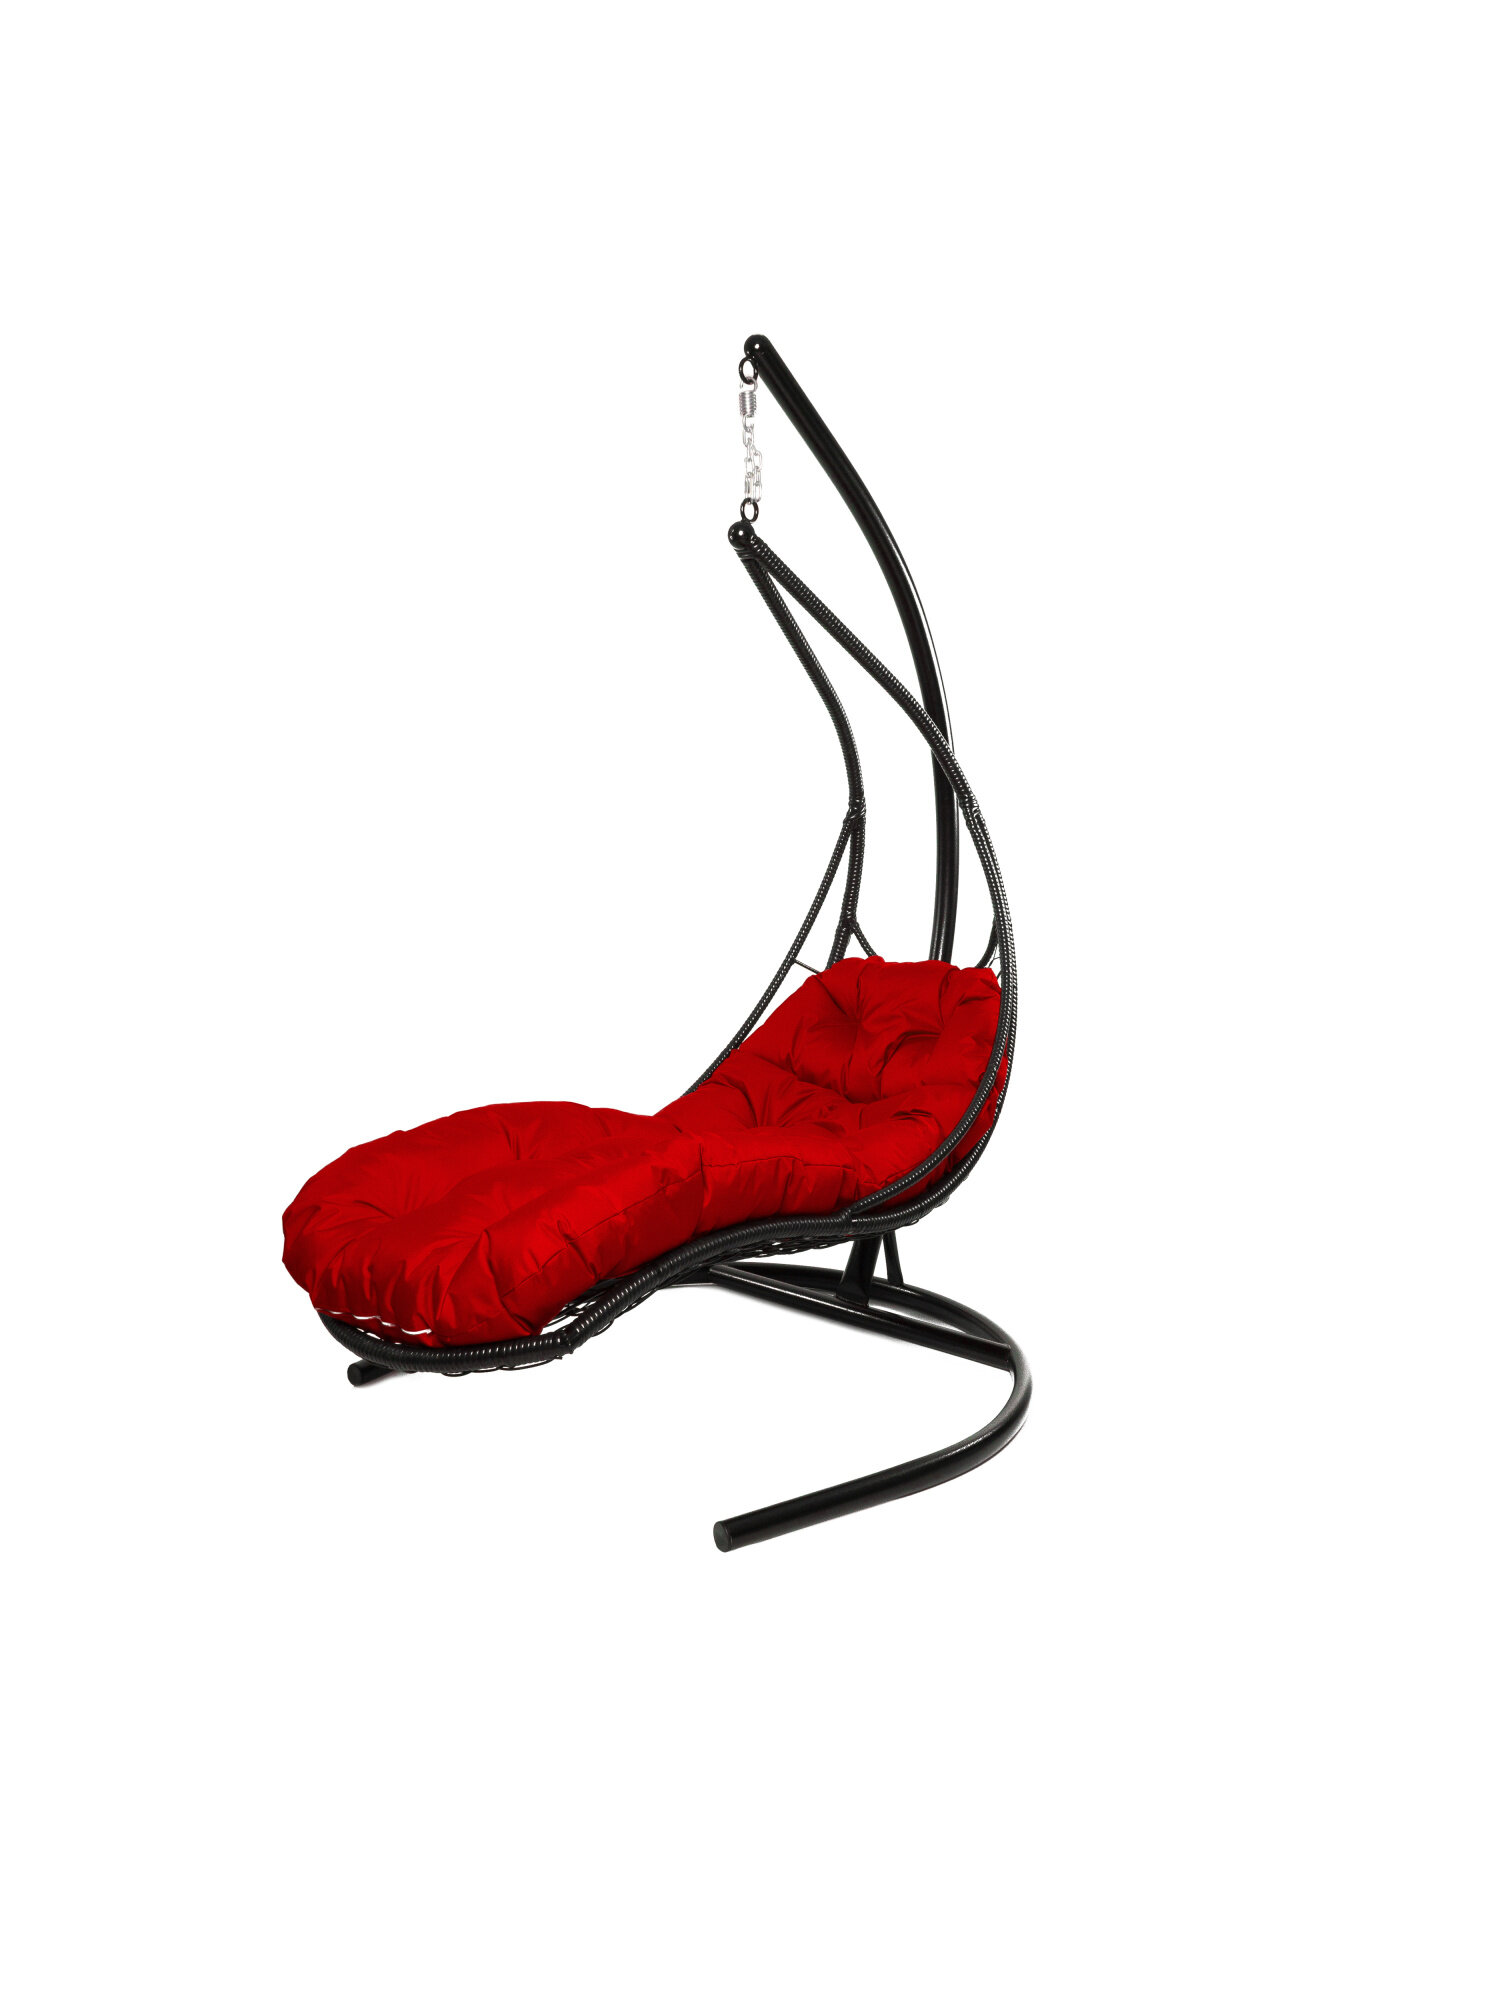 Подвесное кресло M-group лежачее с ротангом черное красная подушка